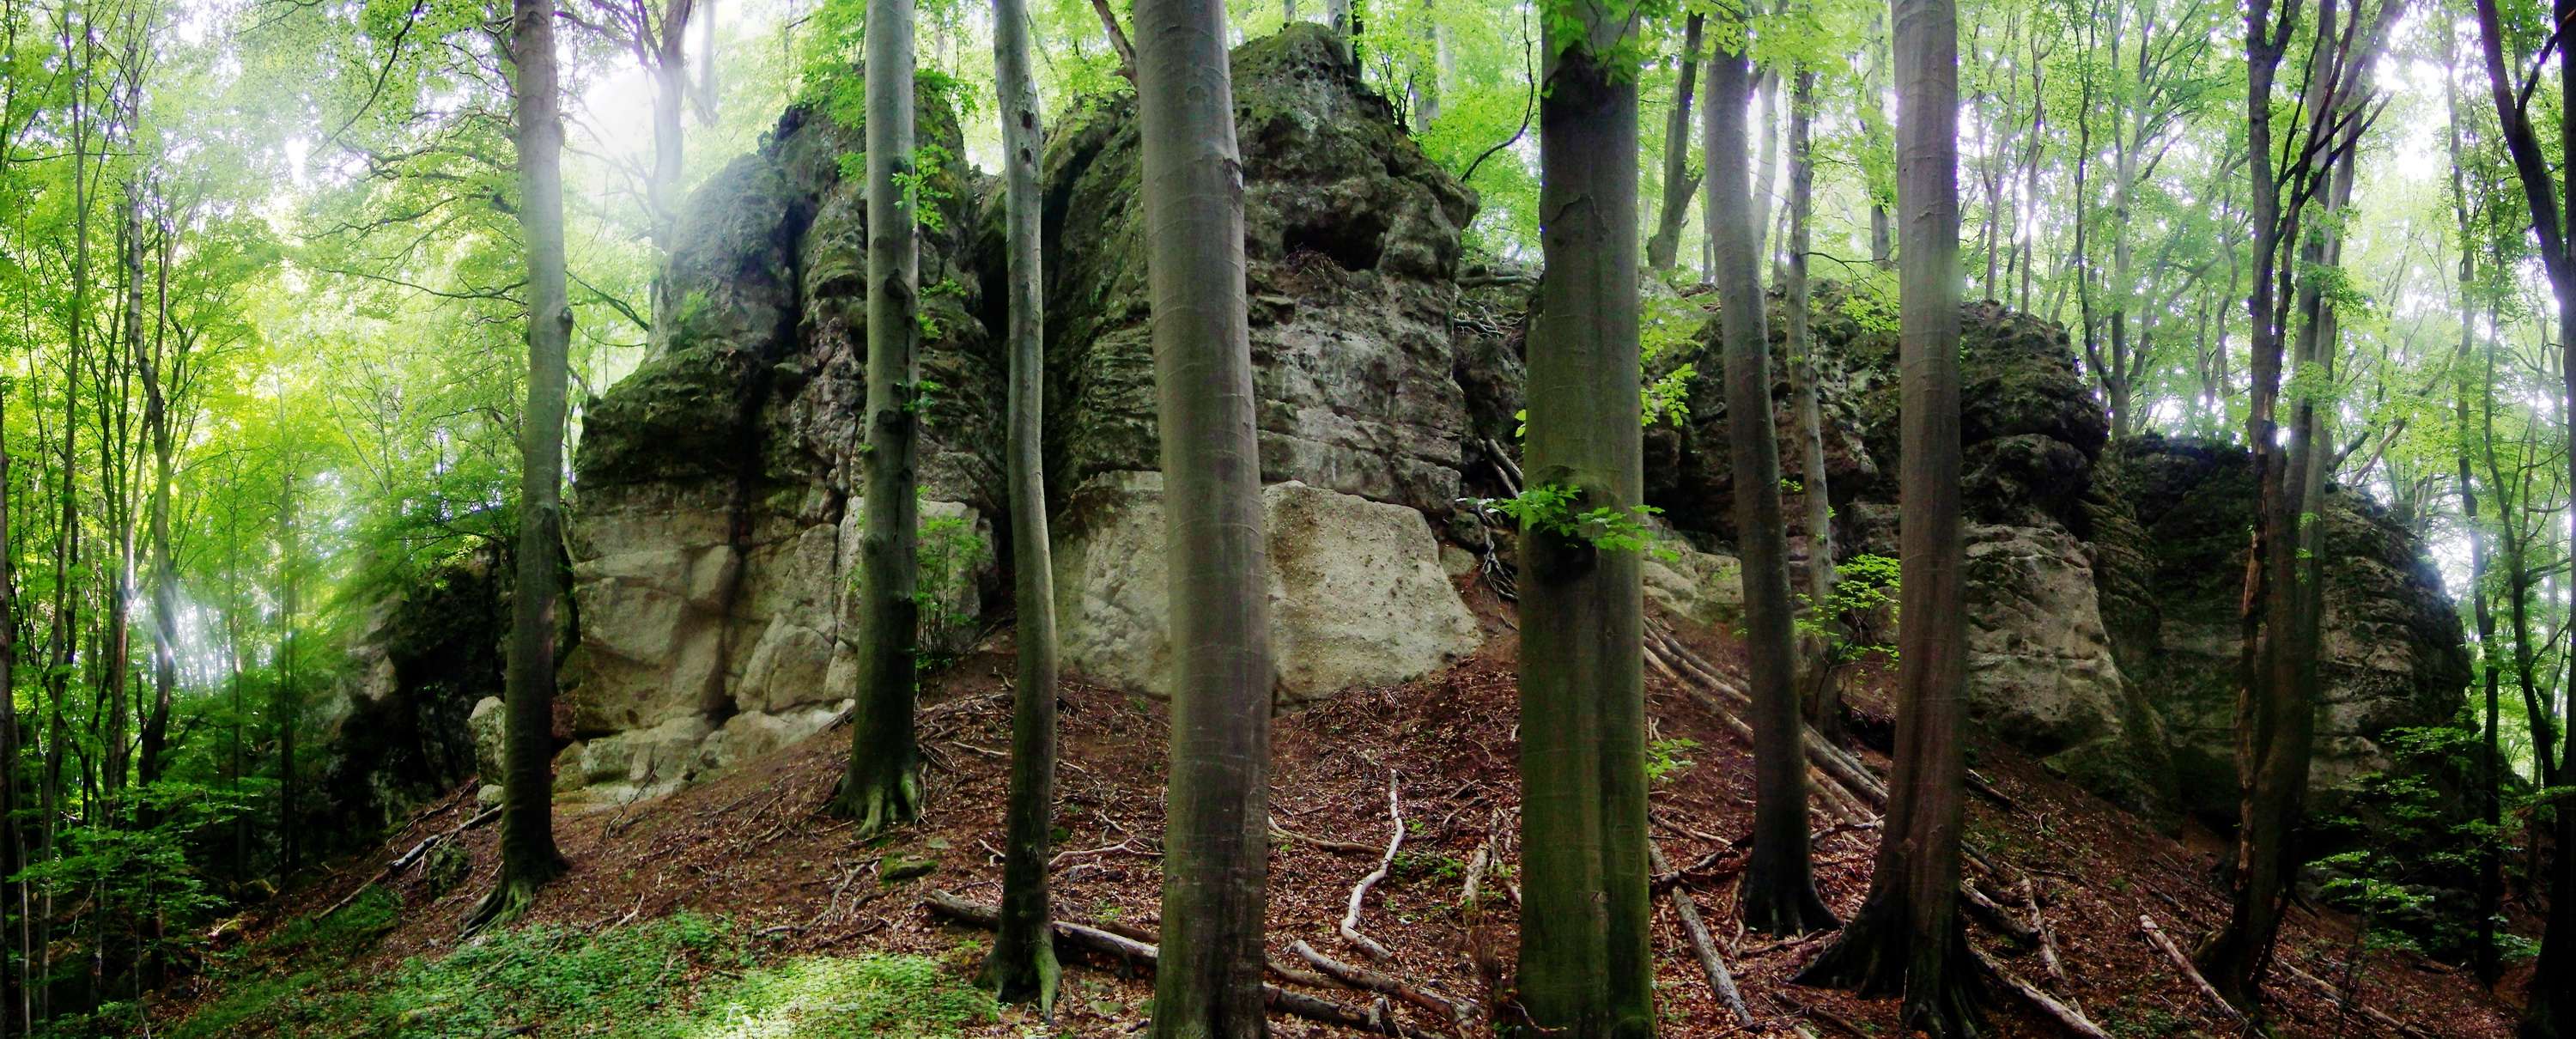 Legszebb természetfotók - Zsivány sziklák (Fotópályázat 2012-2013)